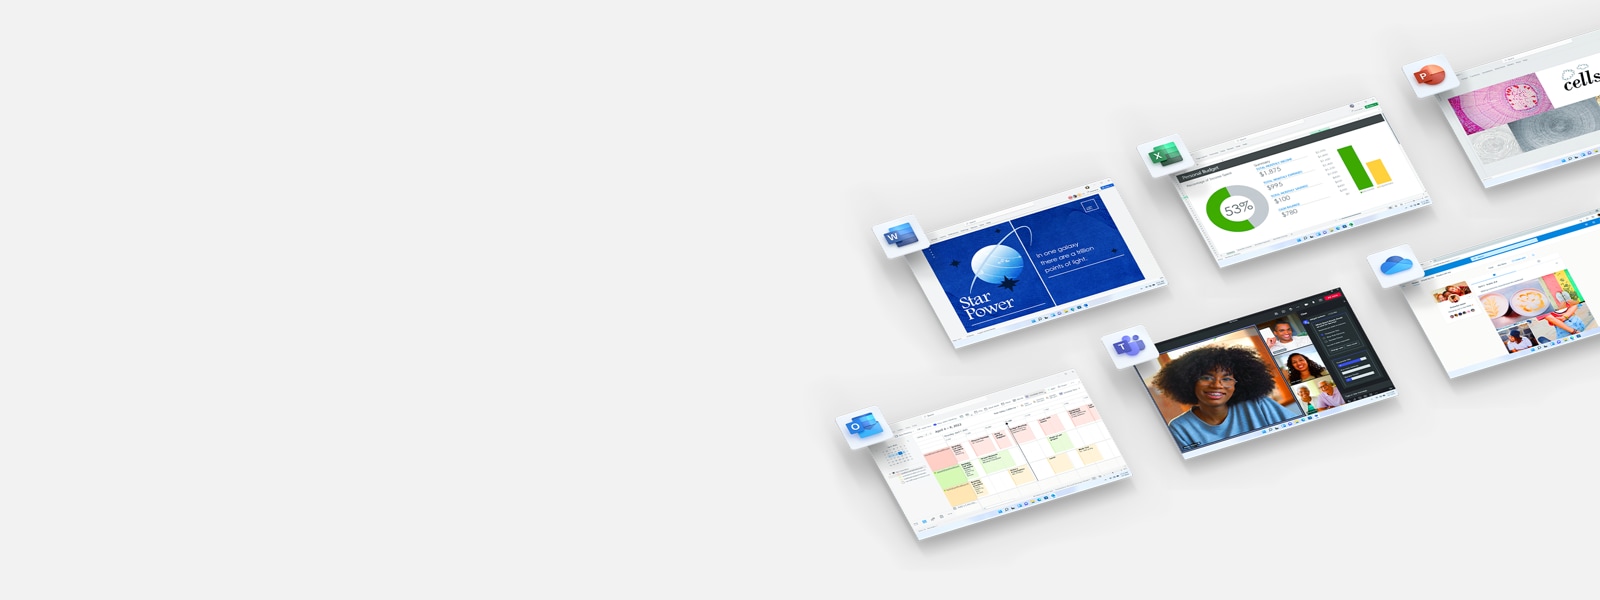 Écrans et icônes d’application pour les applications Office qui font partie de Microsoft 365